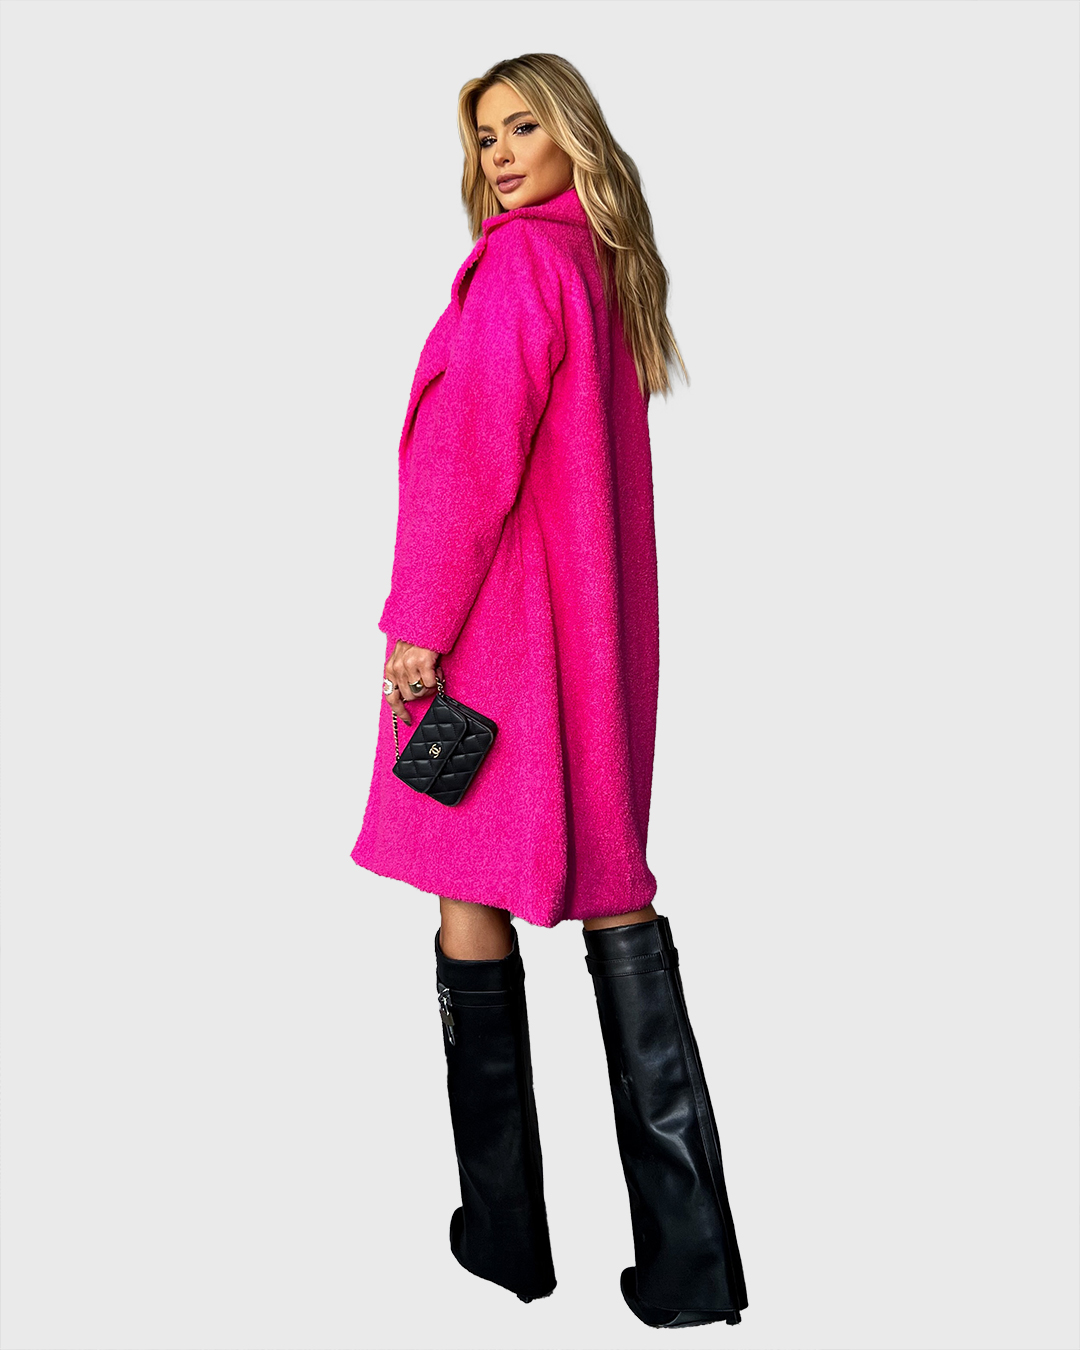 Dot Clothing - Casaco Dot Clothing Longo Pink - 1926PINK